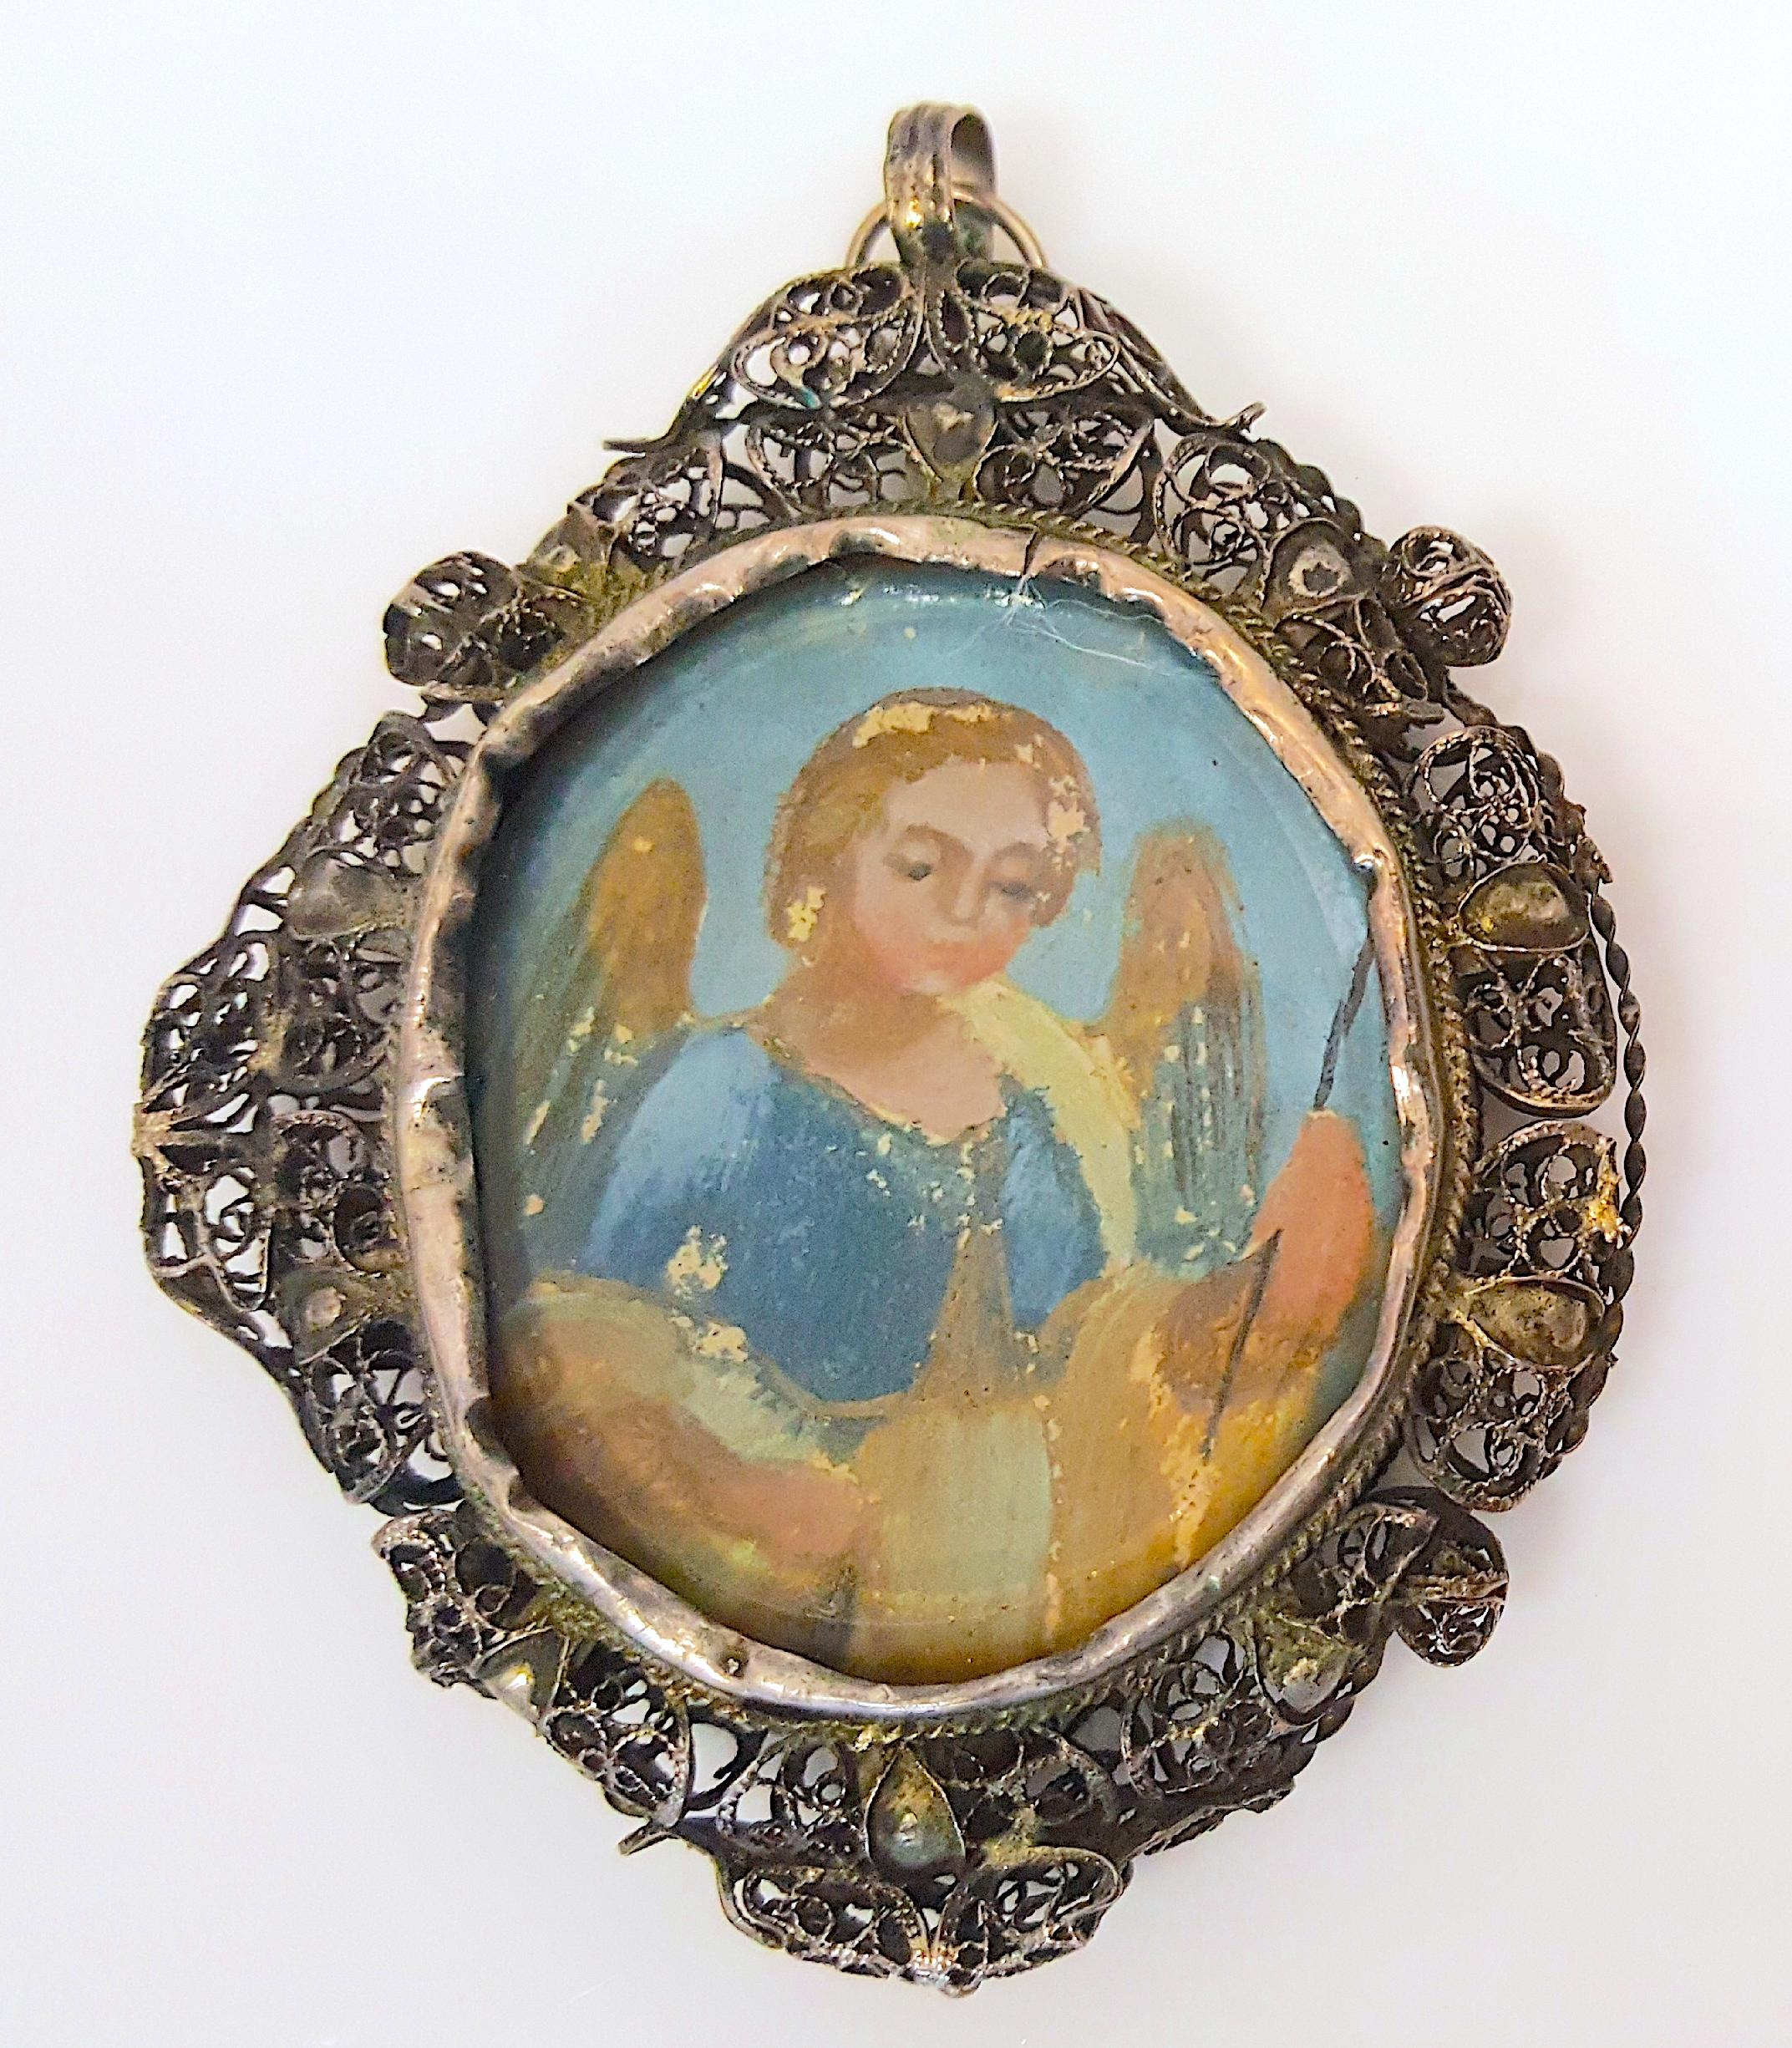 D'une grande valeur artistique en tant que peinture en clair-obscur de la Renaissance avec de précieux pigments de lapis-lazuli ultramarin, ce médaillon-pendentif en argent doré-filigrané du début du XVIe siècle renferme la figure colorée d'un ange